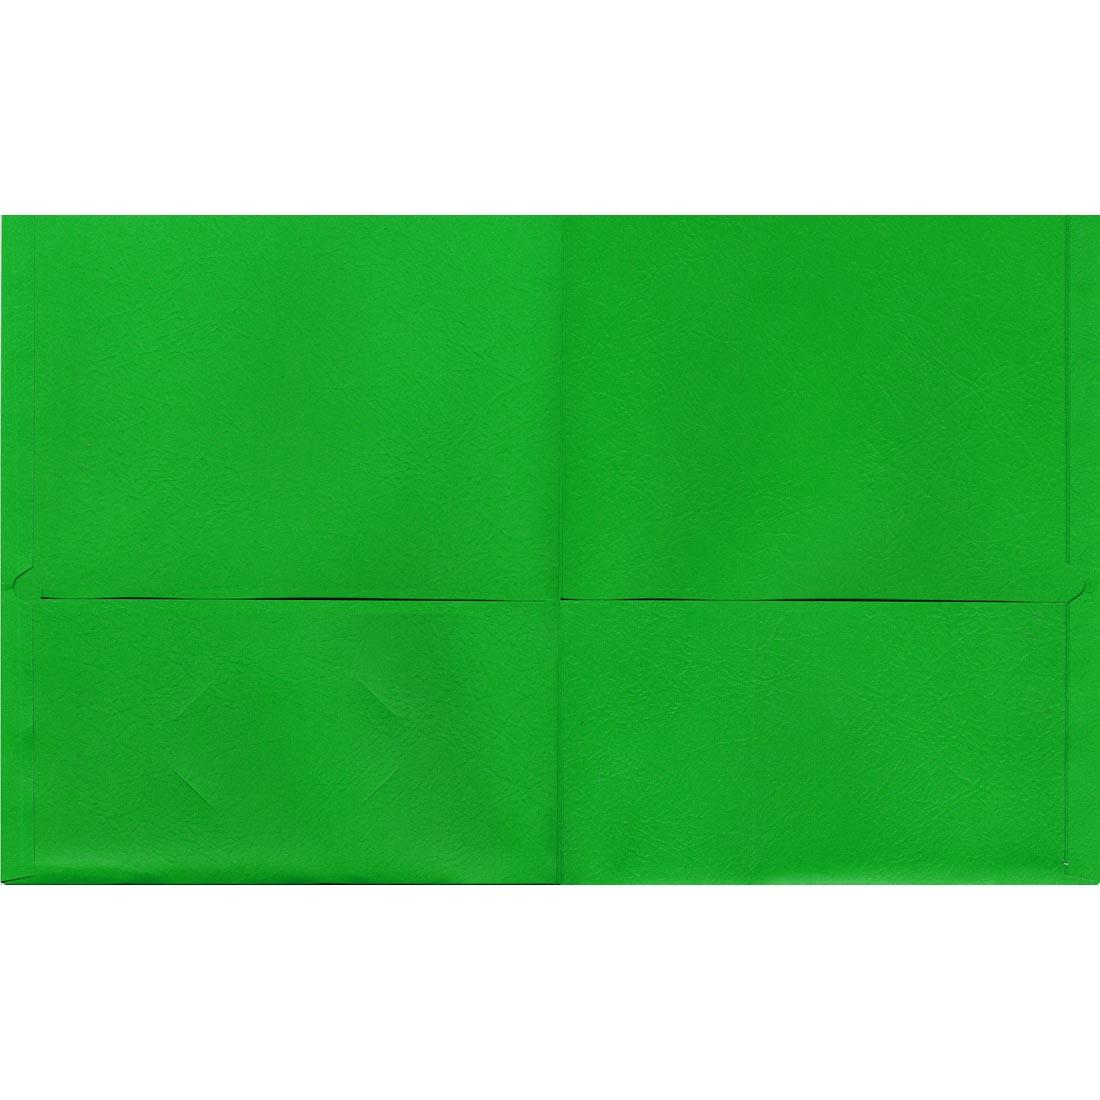 Green Oxford Twin Pocket Portfolio shown open